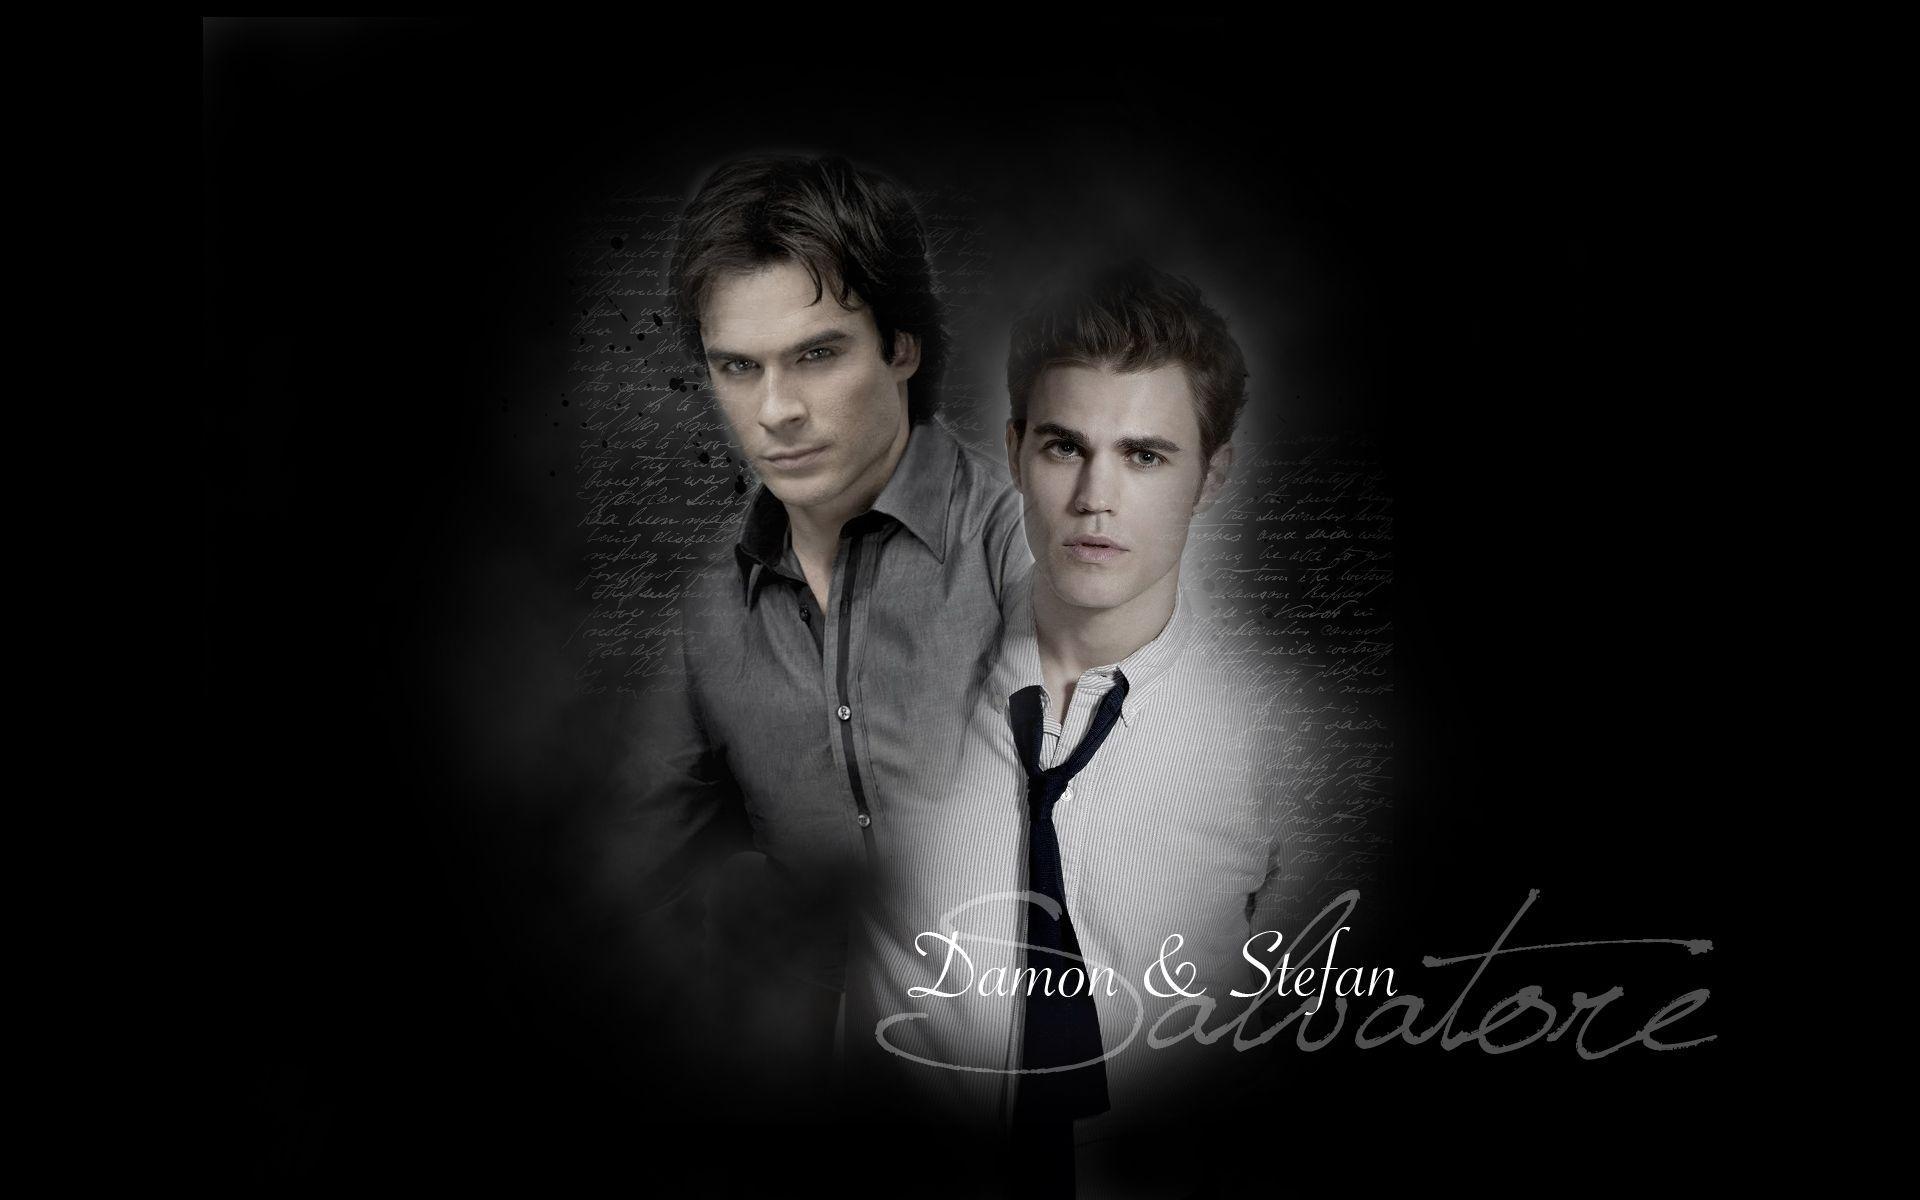 Vampire Diaries Wallpaper. Vampire Diaries Wallpaper, Vampire